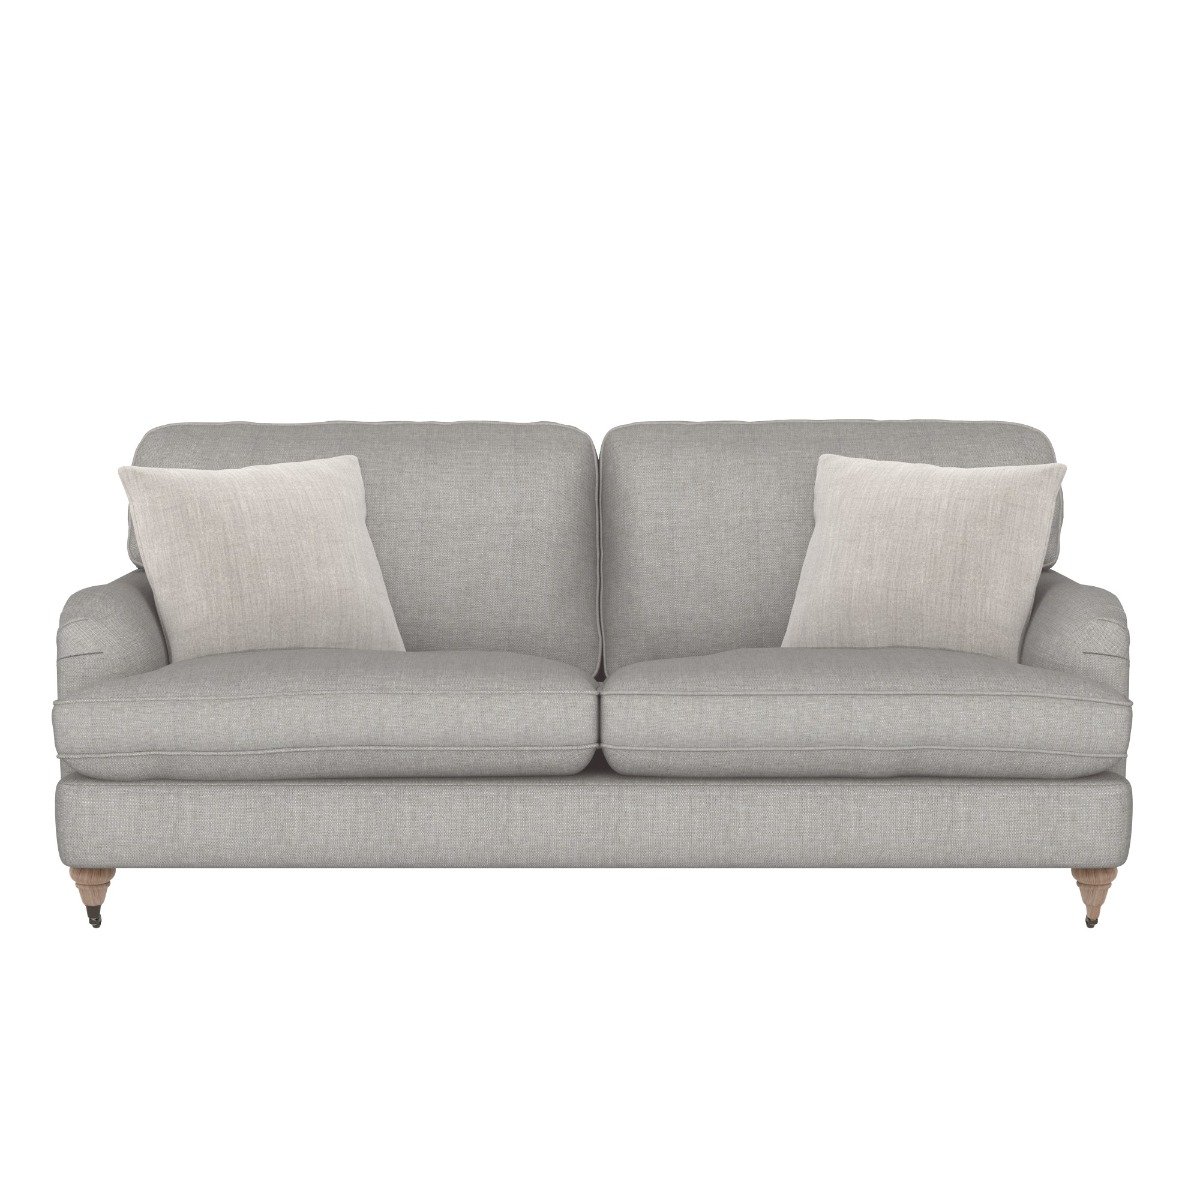 Sloane Large Sofa, Grey Fabric | Barker & Stonehouse